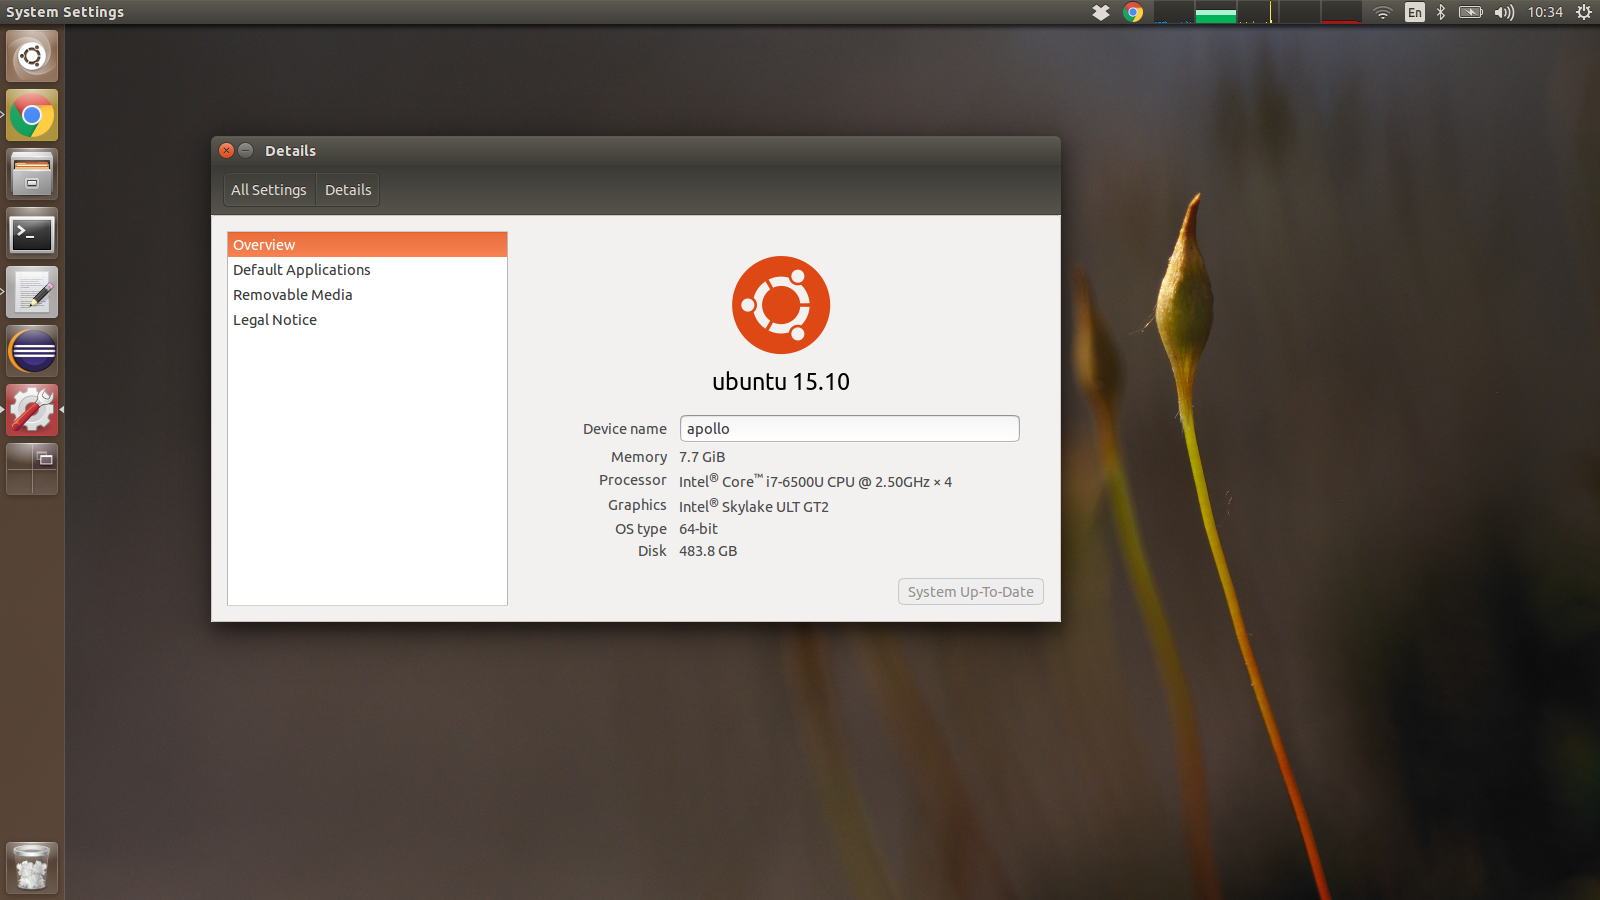 Apollo running latest Ubuntu